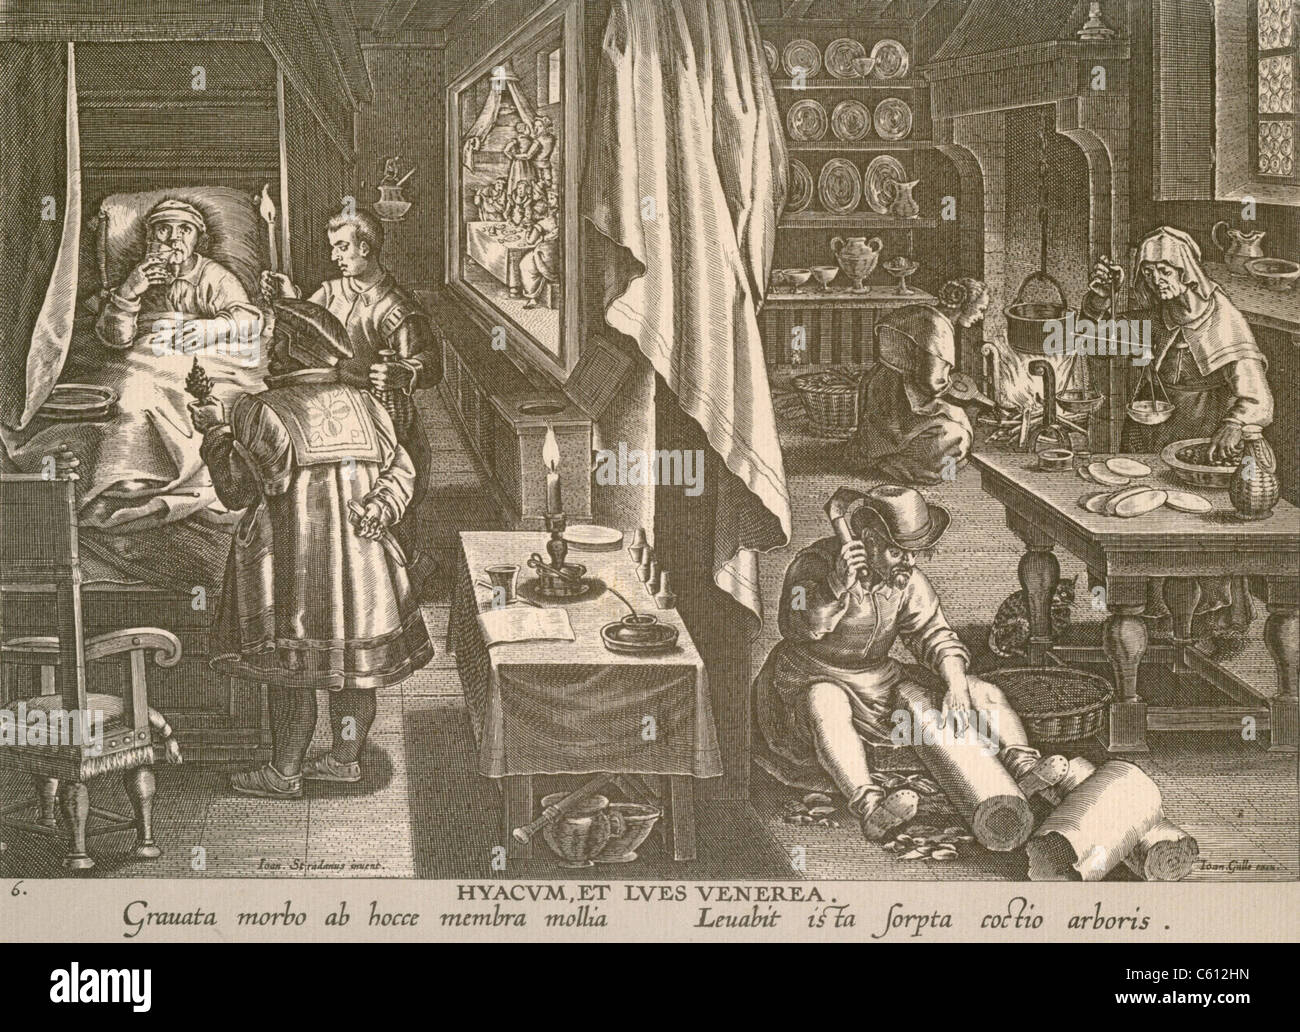 Eine Multi-Szene Gravur zeigt die Behandlung eines europäischen Syphilis-Patienten, trinkt Guayaco, eine Medizin, die aus dem Holz des Baumes Guaiacum (wird vorbereitet und gekocht auf rechten Seite) gemacht. Mitte links ist eine Bordell-Szene, die die Quelle der sexuell übertragbaren Krankheit war. Ca. 1570. Stockfoto